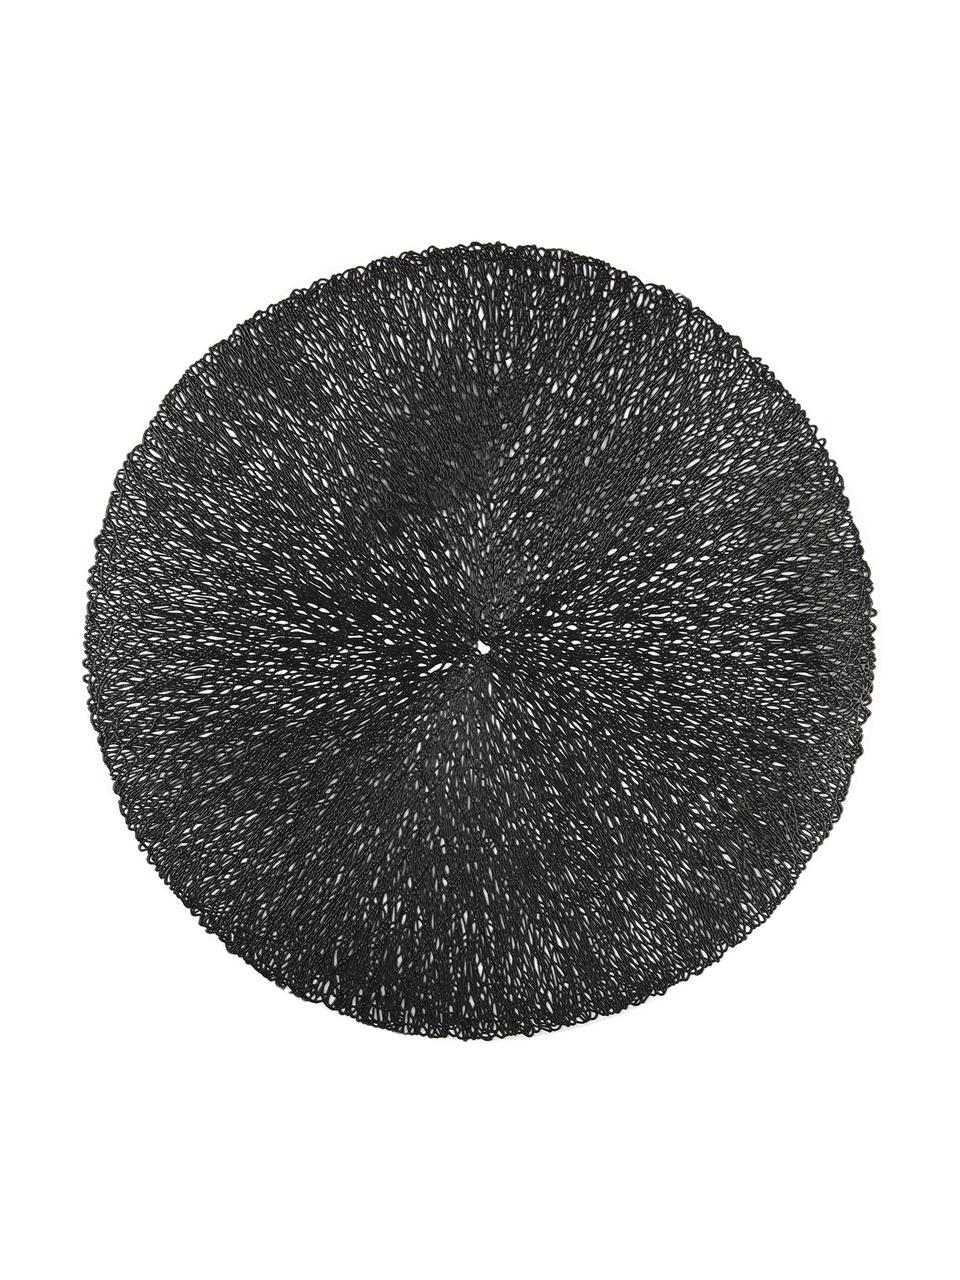 Ronde placemats Sous in zwart, 2 stuks, Kunststof, Zwart, Ø 38 cm